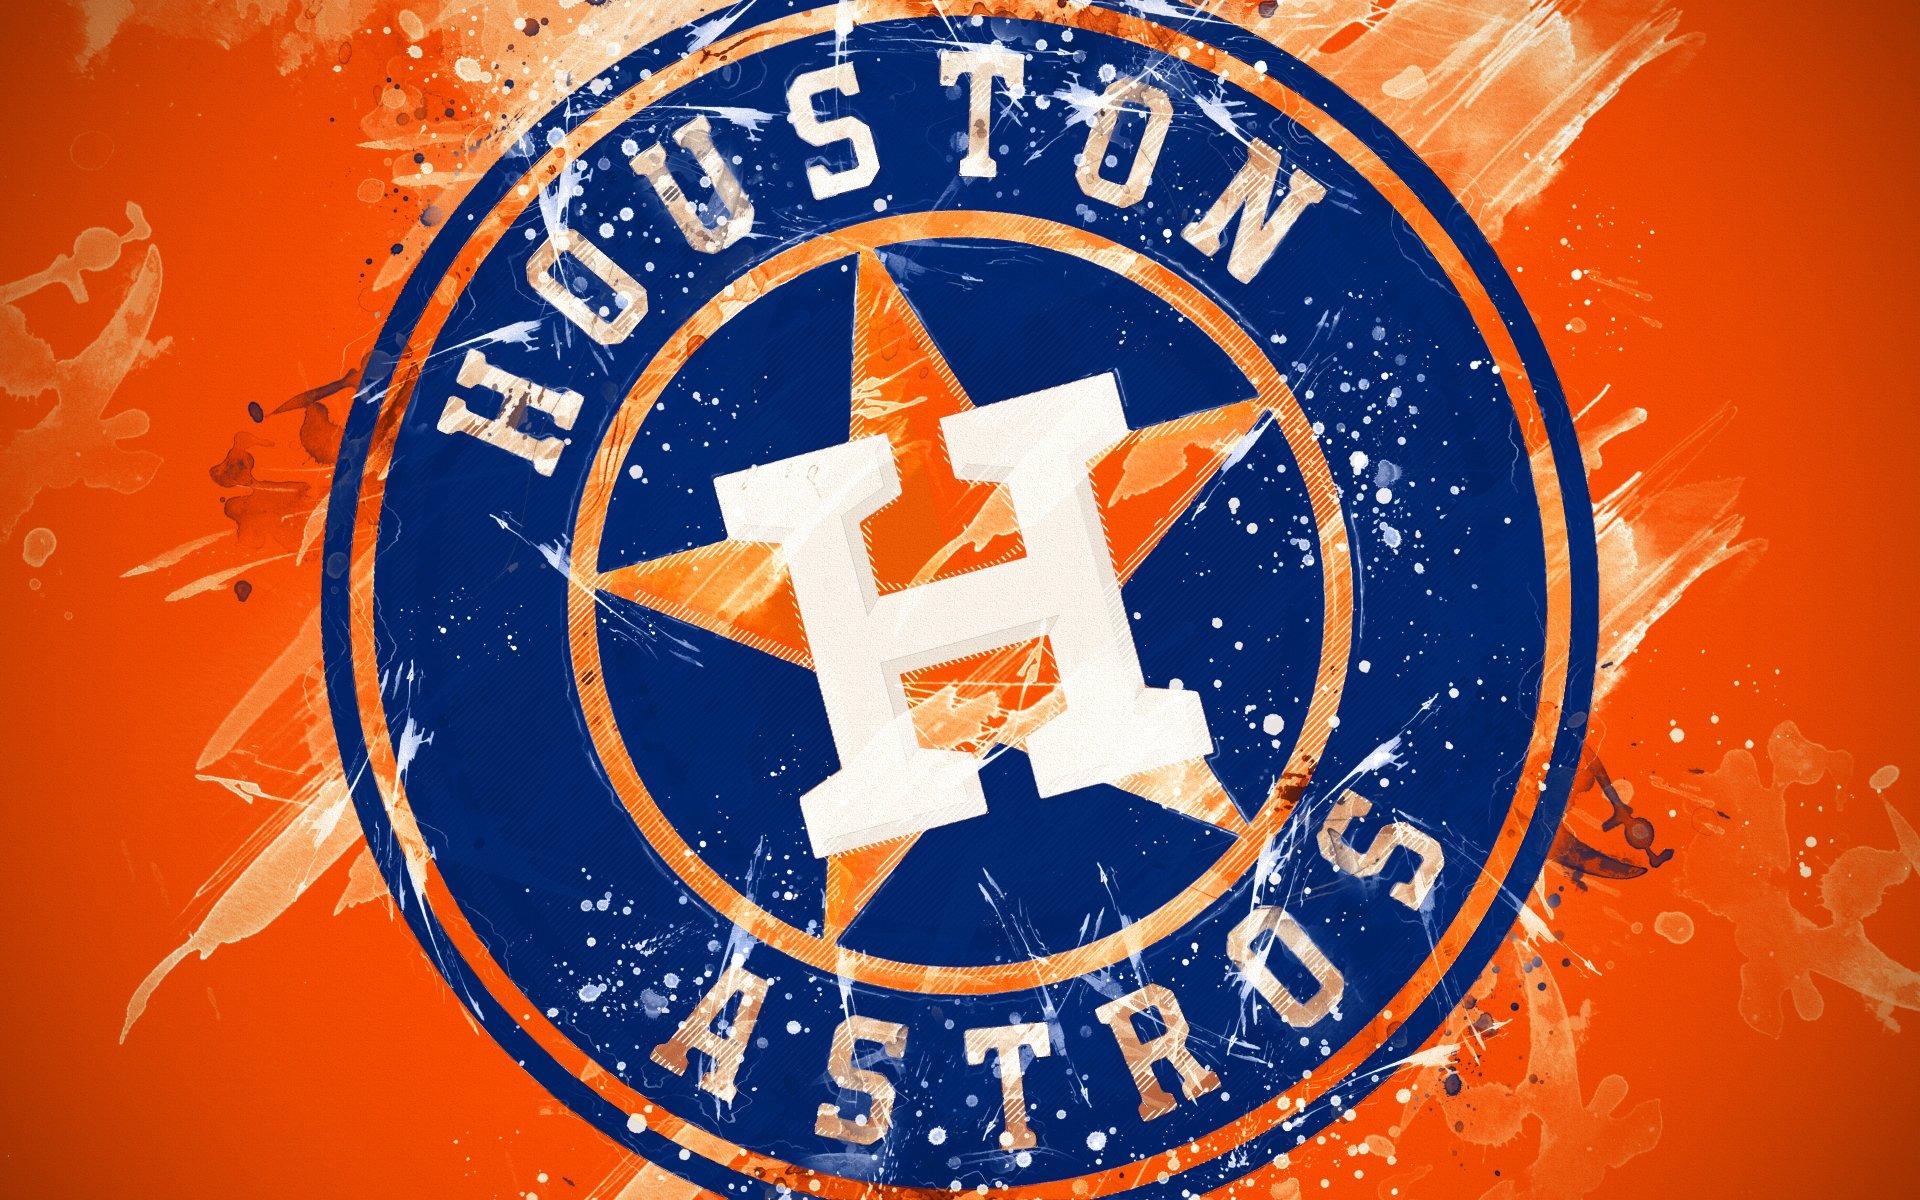 Houston Astros 2000-12  Team wallpaper, Baseball wallpaper, Mlb teams